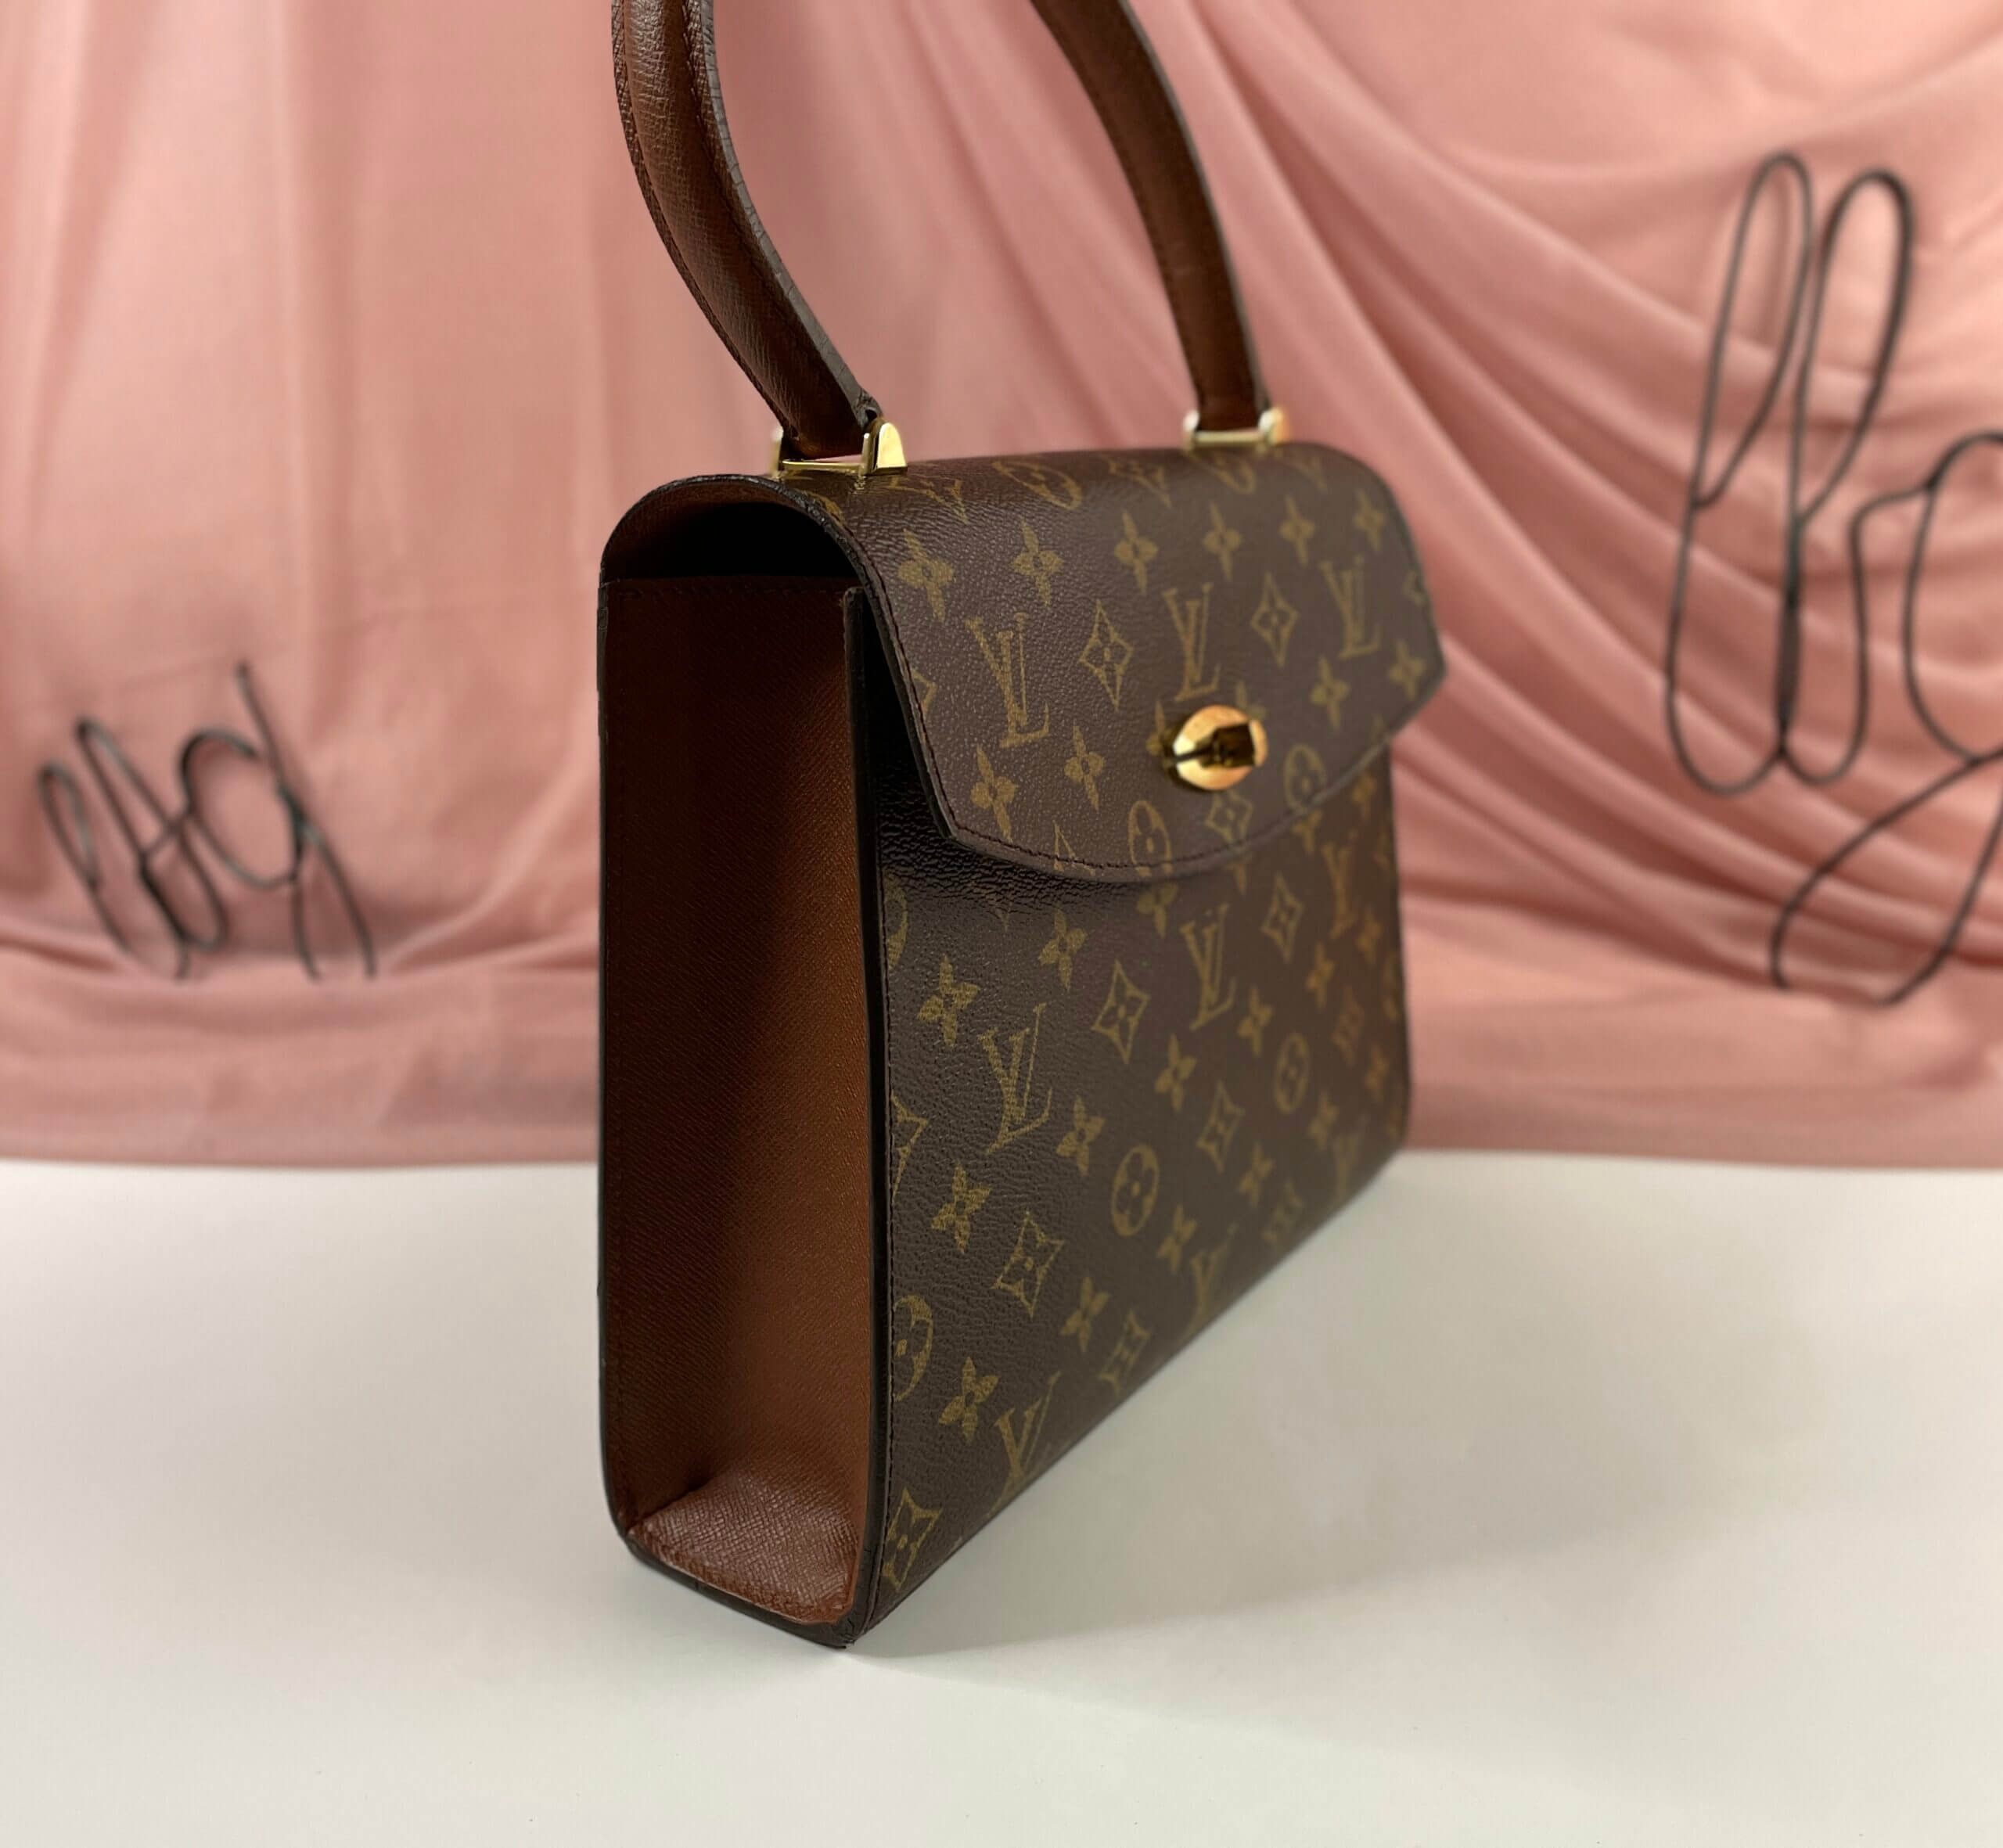 Louis Vuitton Vintage Monogram Malesherbes Bag